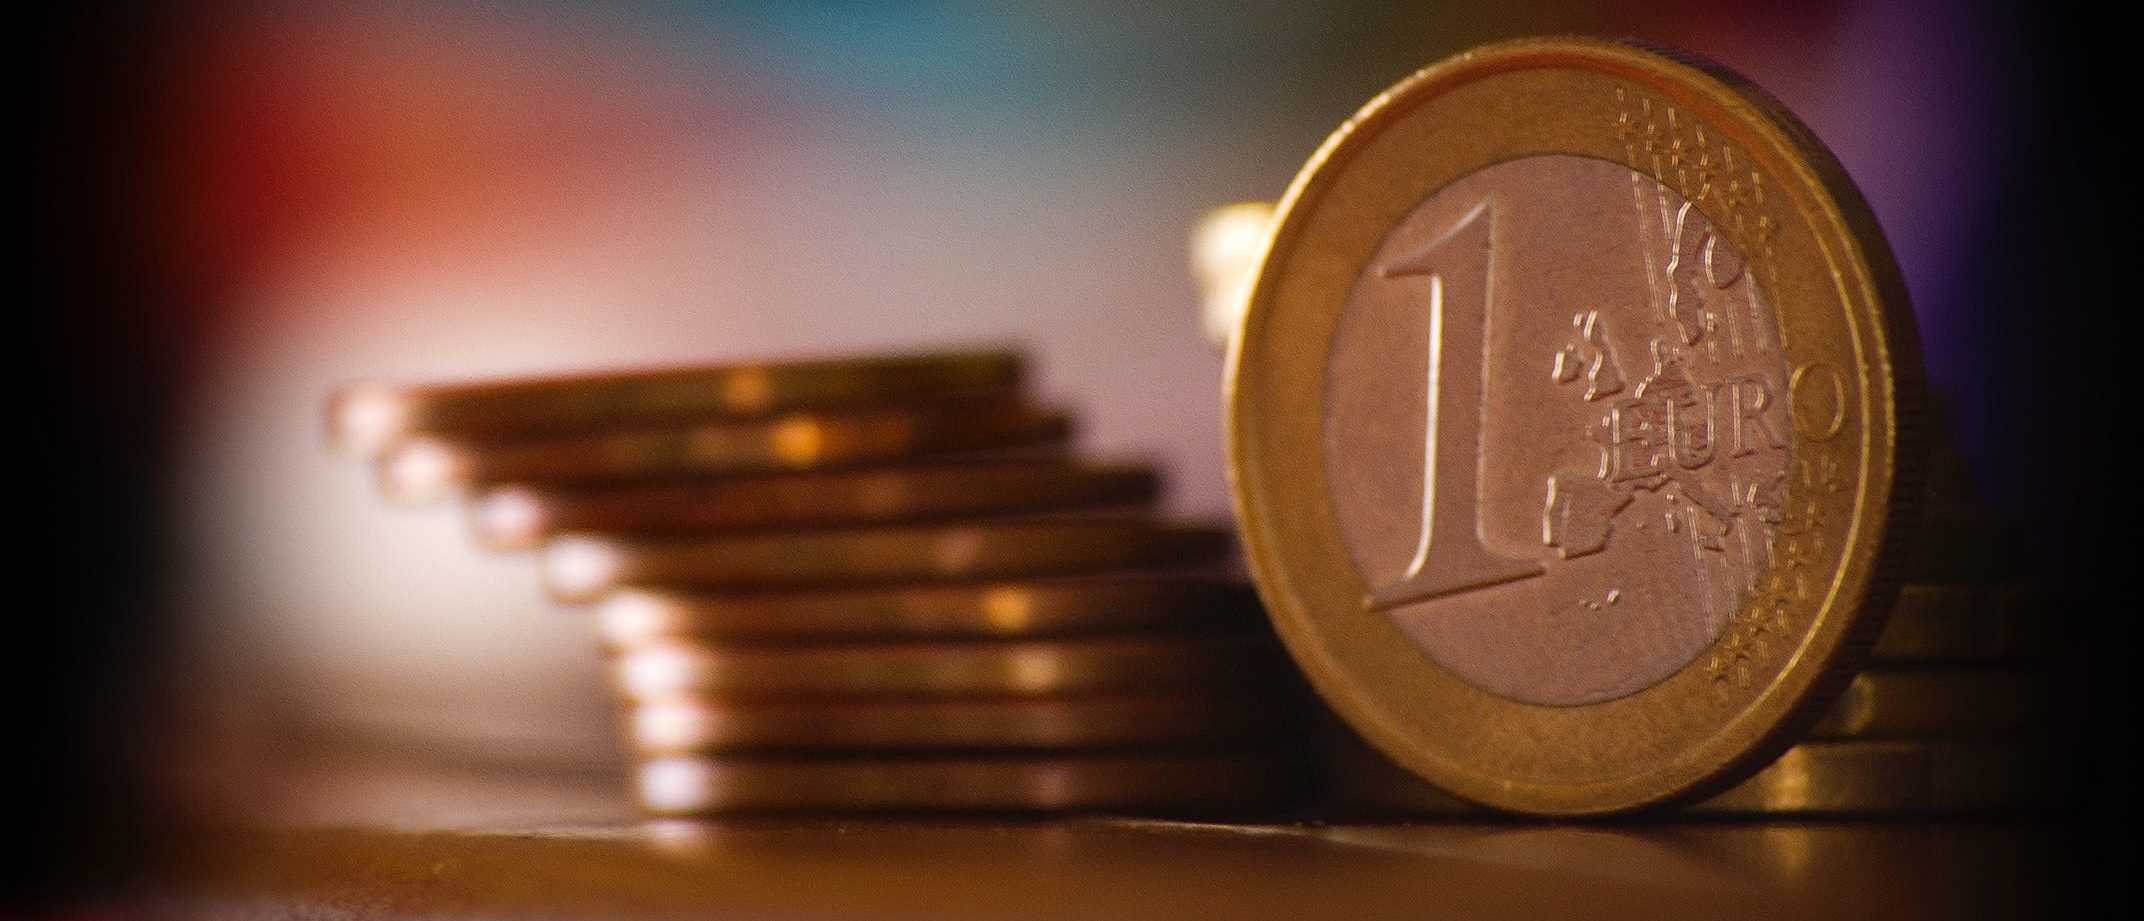 ethereum dólar investing investieren in kryptowährung uk